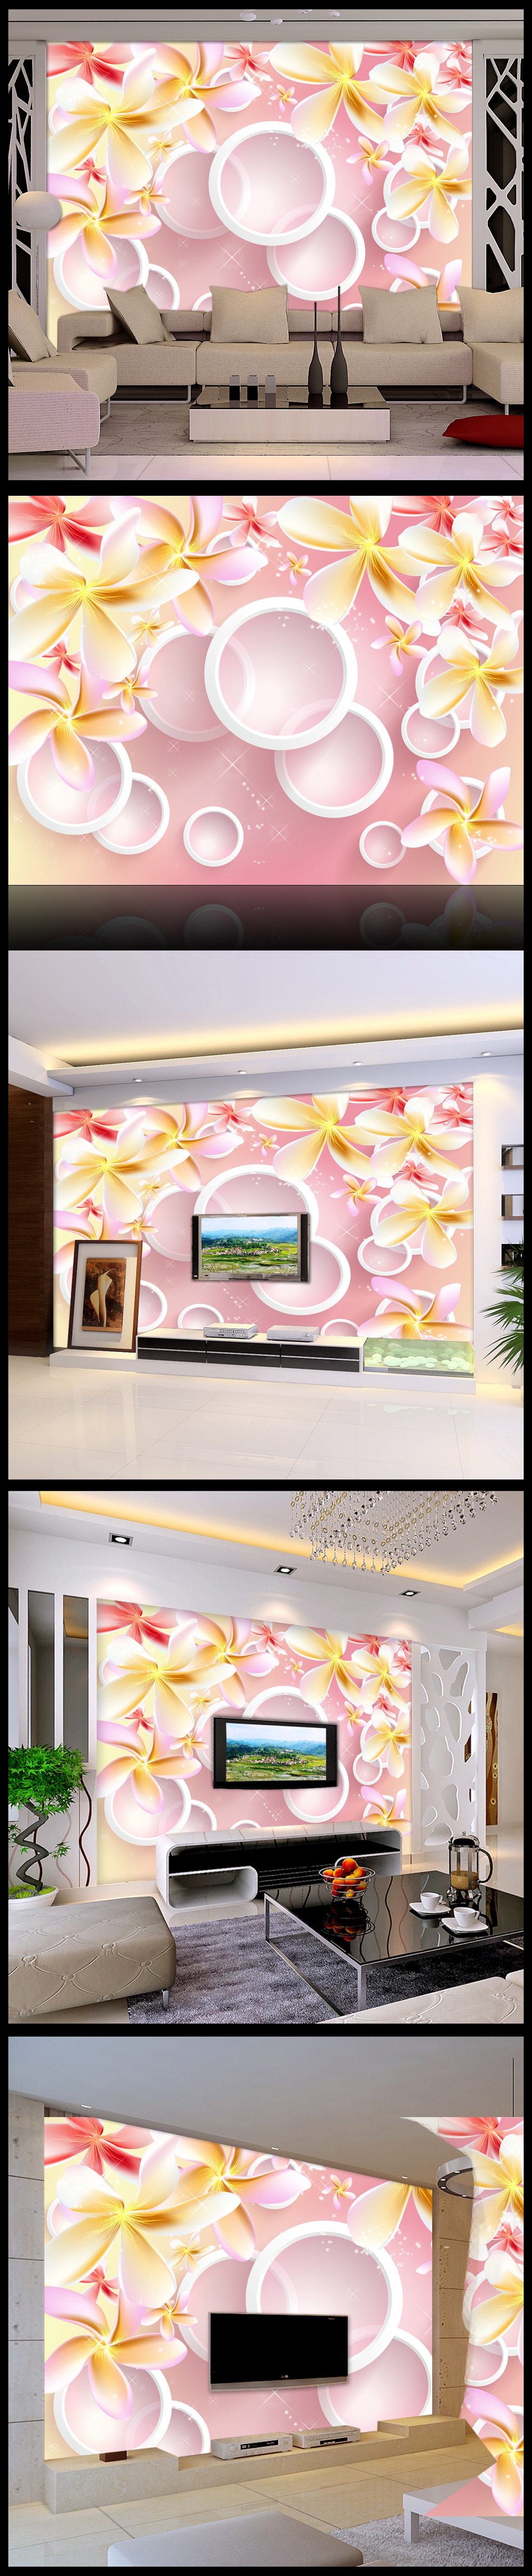 壁纸 背景墙 花朵/[版权图片]3D立体圆梦幻花朵电视背景墙壁纸壁画